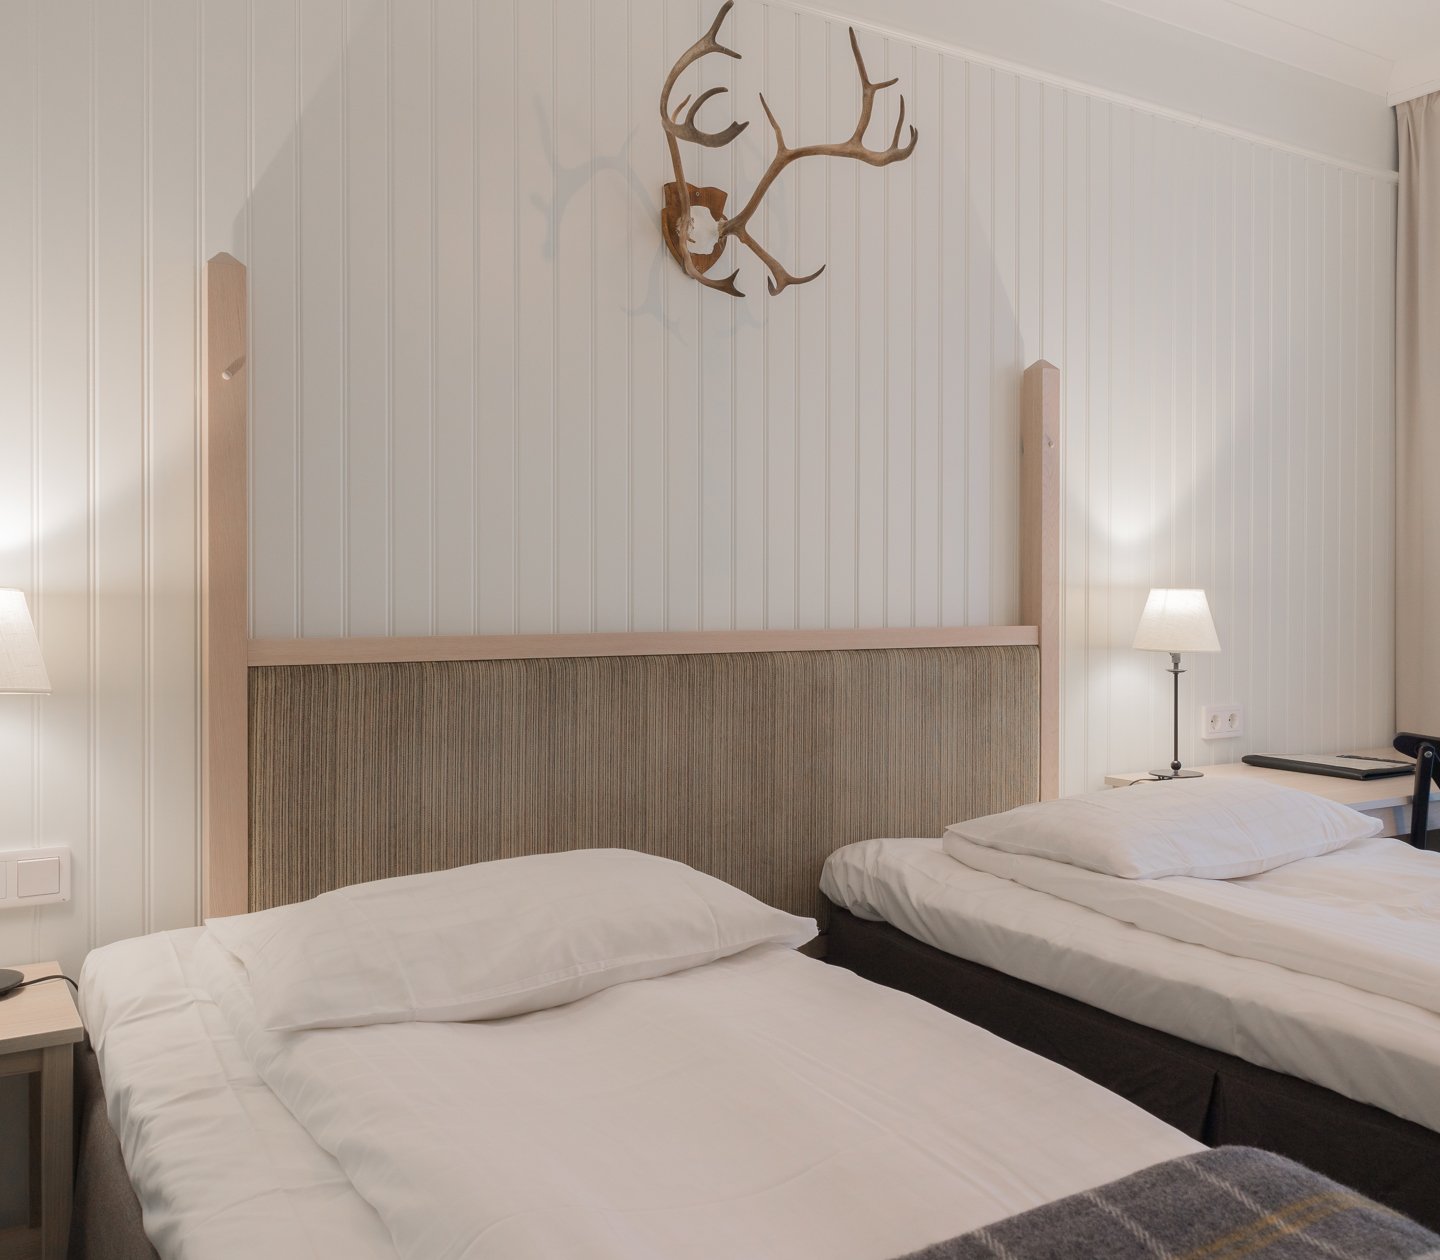 Mysigt hotellrum med separerade sängar, skrivbord och djurhorn på väggen